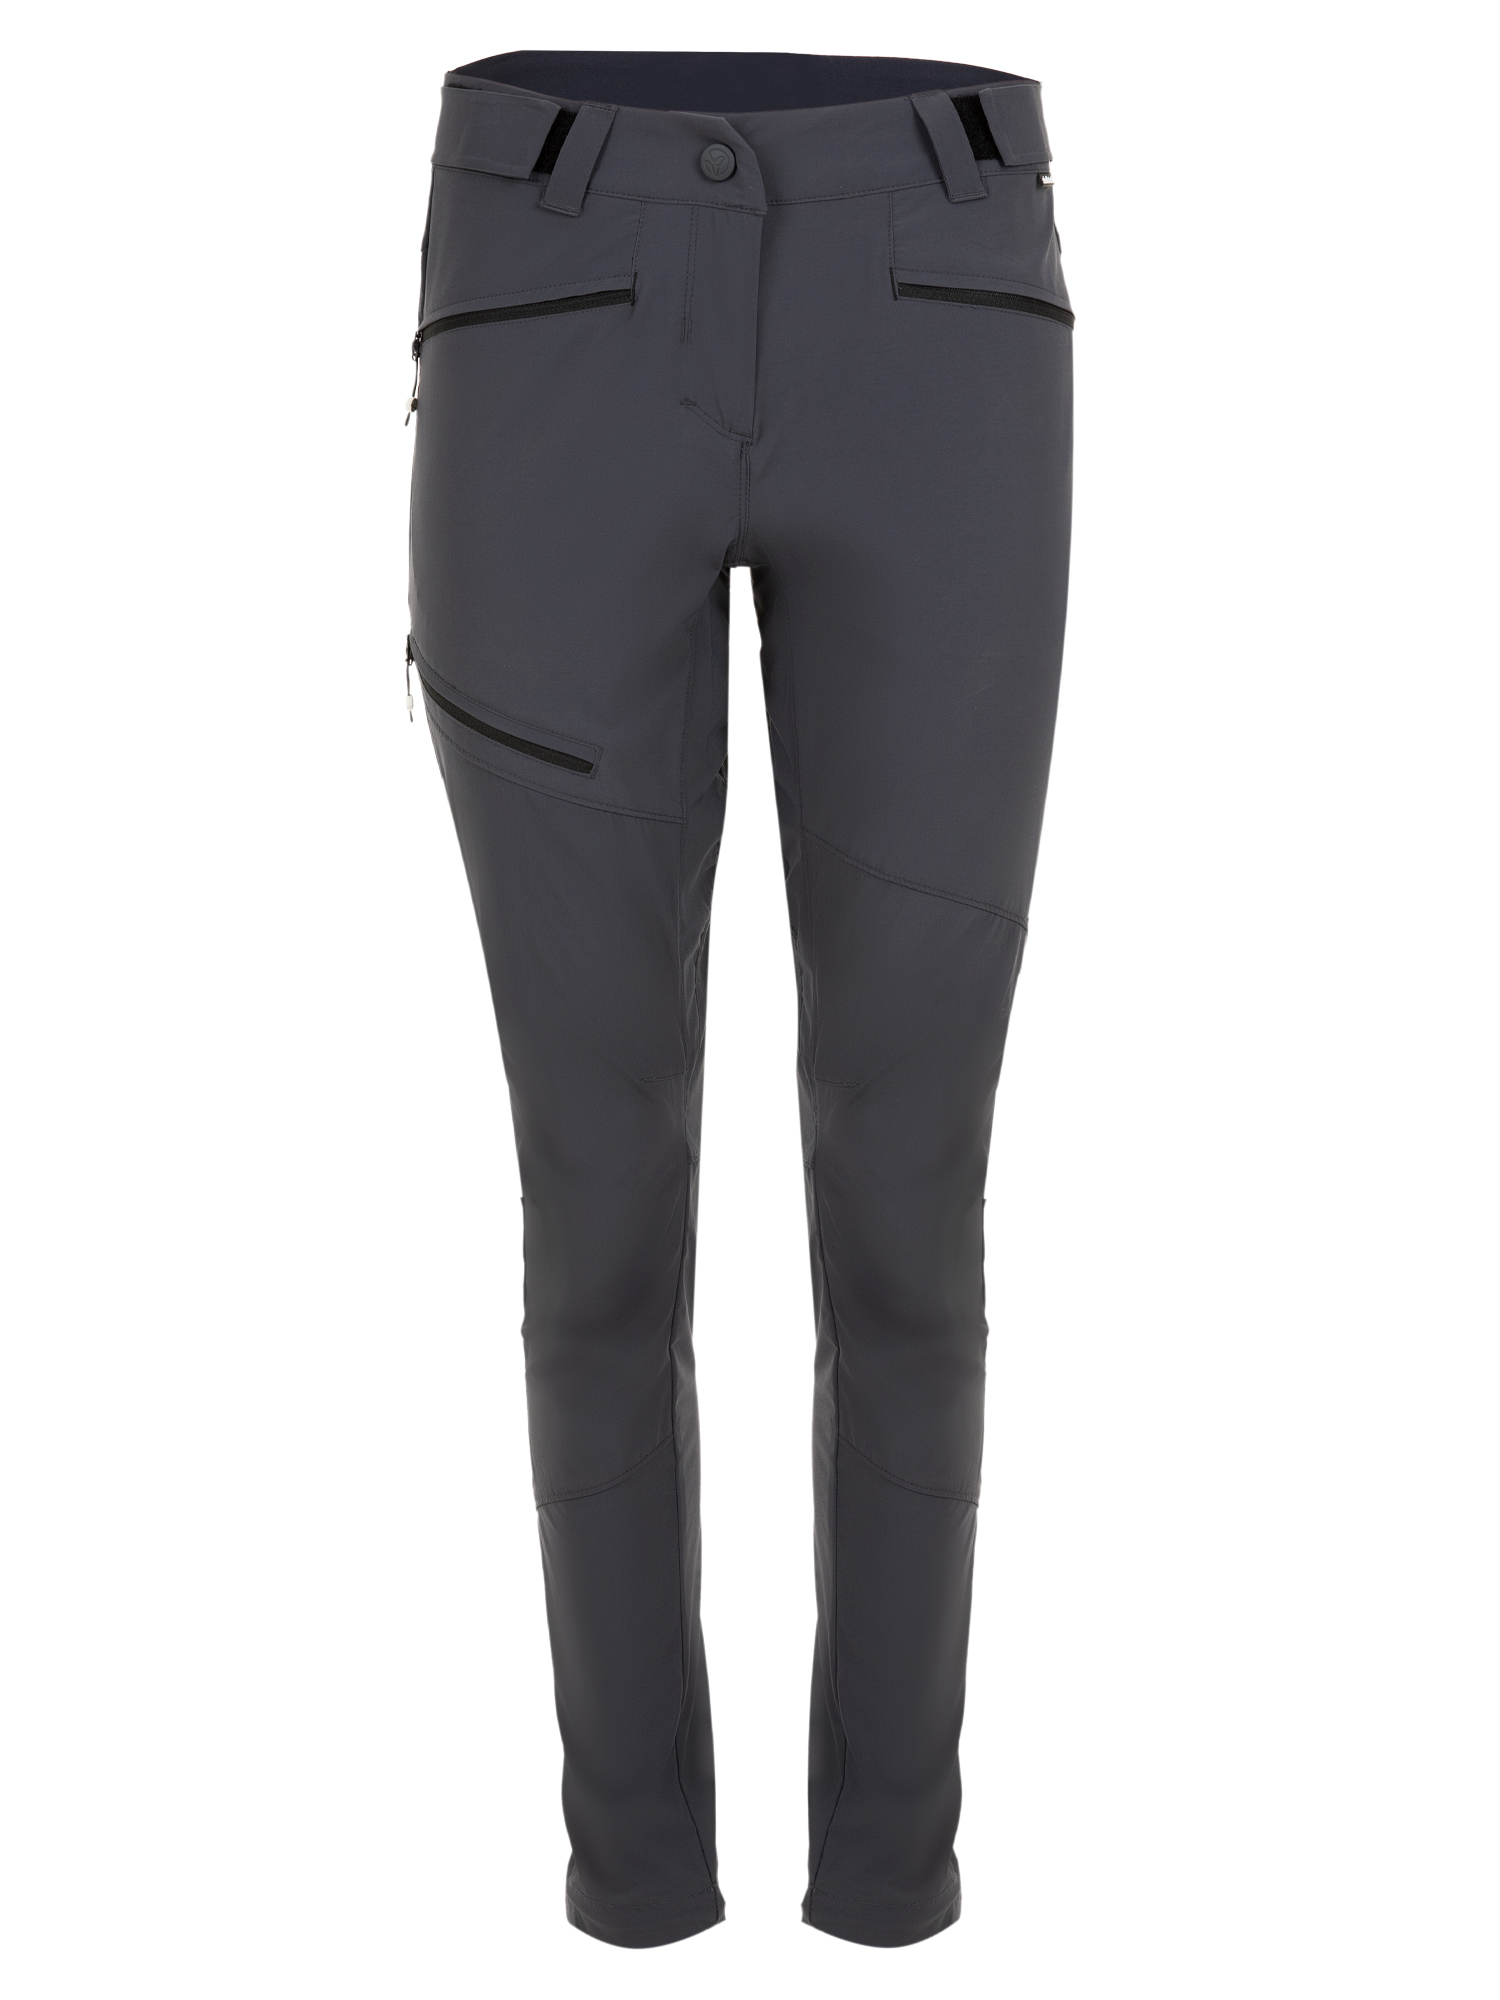 Спортивные брюки женские Ternua Rotar Pt W серые L